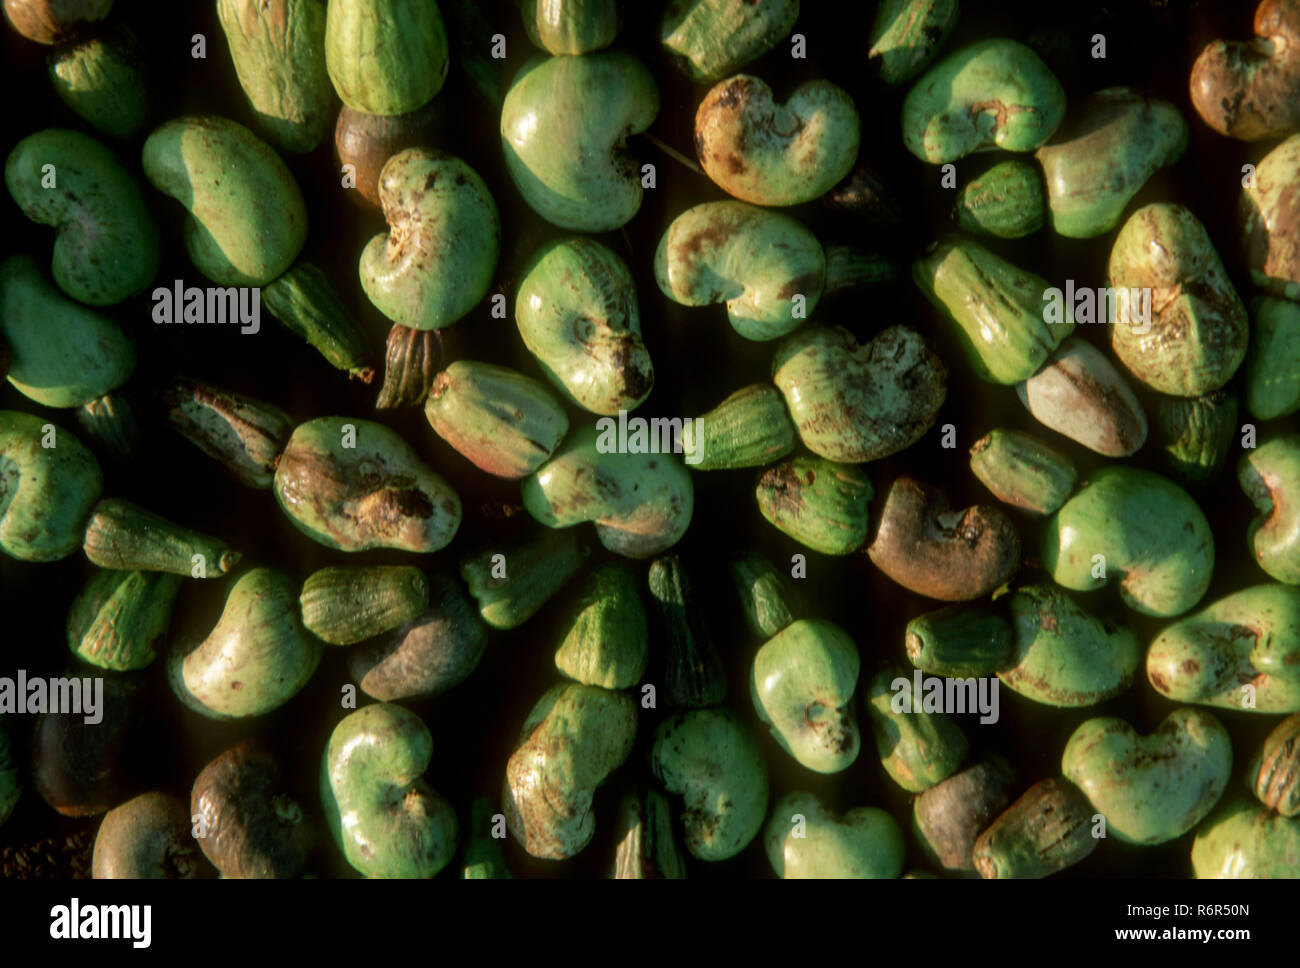 Fruits, pile of cashewnuts, Kankavali, Maharashtra, India Stock Photo